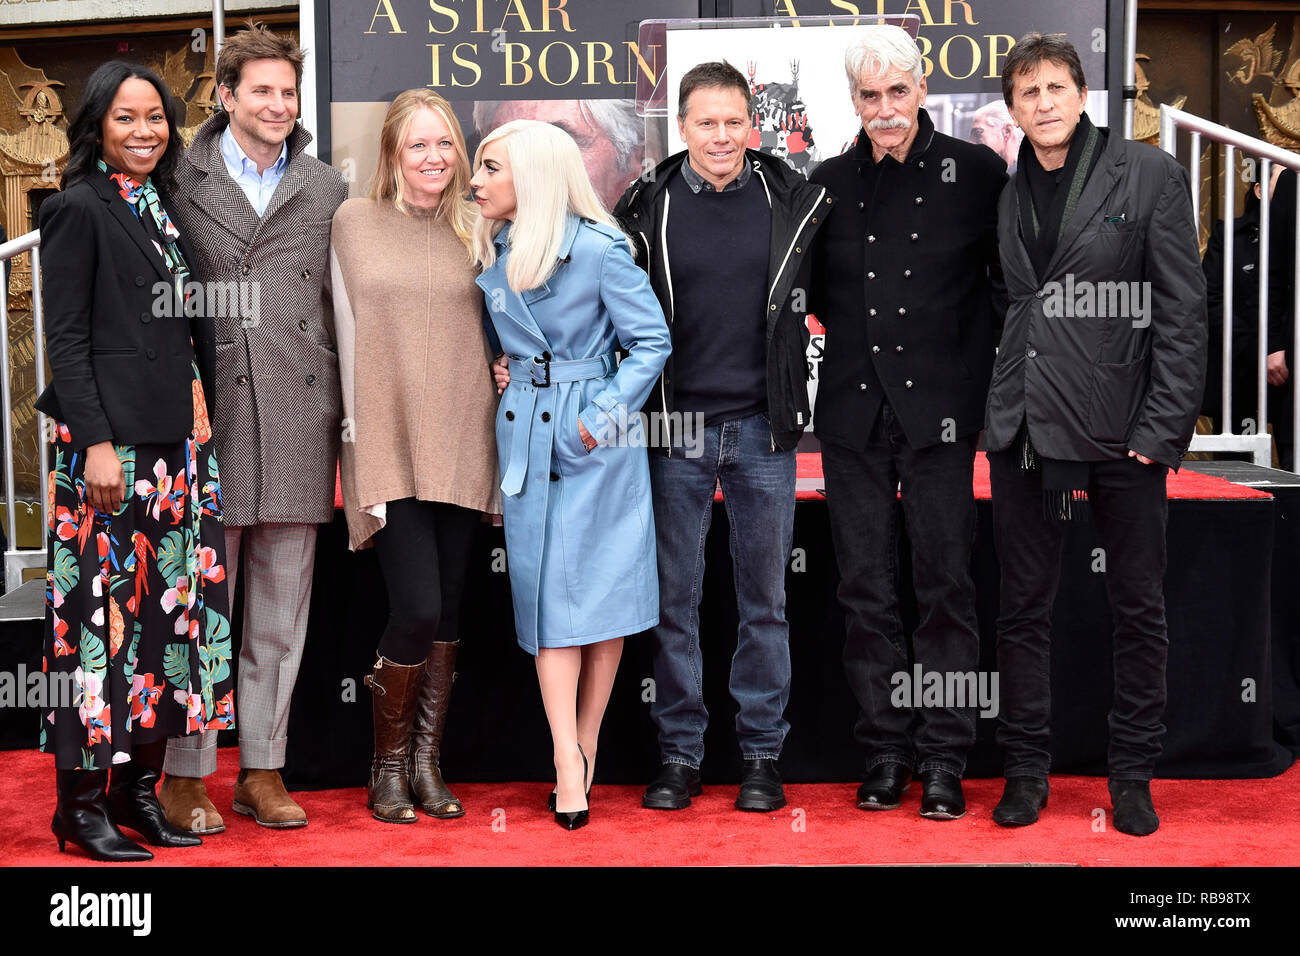 Bradley Cooper, Lady Gaga, Sam Elliott et vous pourrez assister à l'Théâtre chinois de Grauman héberge Sam Elliott Part et cérémonie empreinte de théâtre chinois de Grauman le 7 janvier 2019 à Hollywood, Californie. Banque D'Images